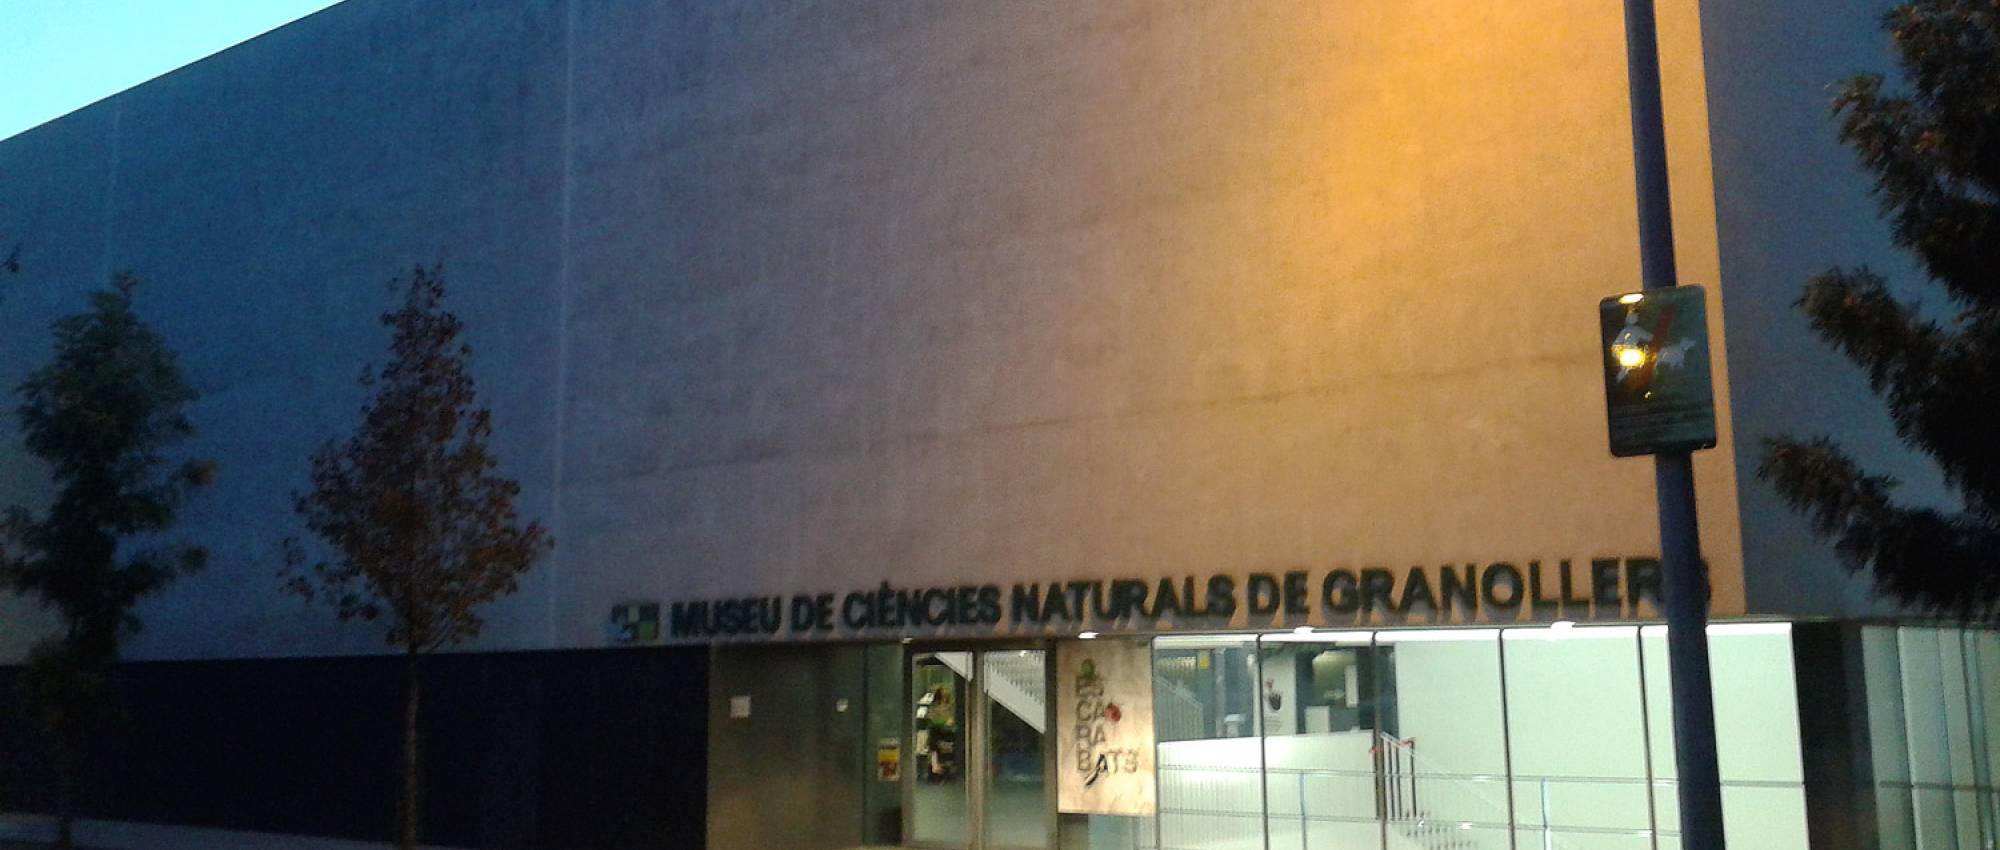 Fachada del Museu d'Història Natural de Granollers.  CC BY-SA 4.0 - Vàngelis Villar / Wikimedia Commons